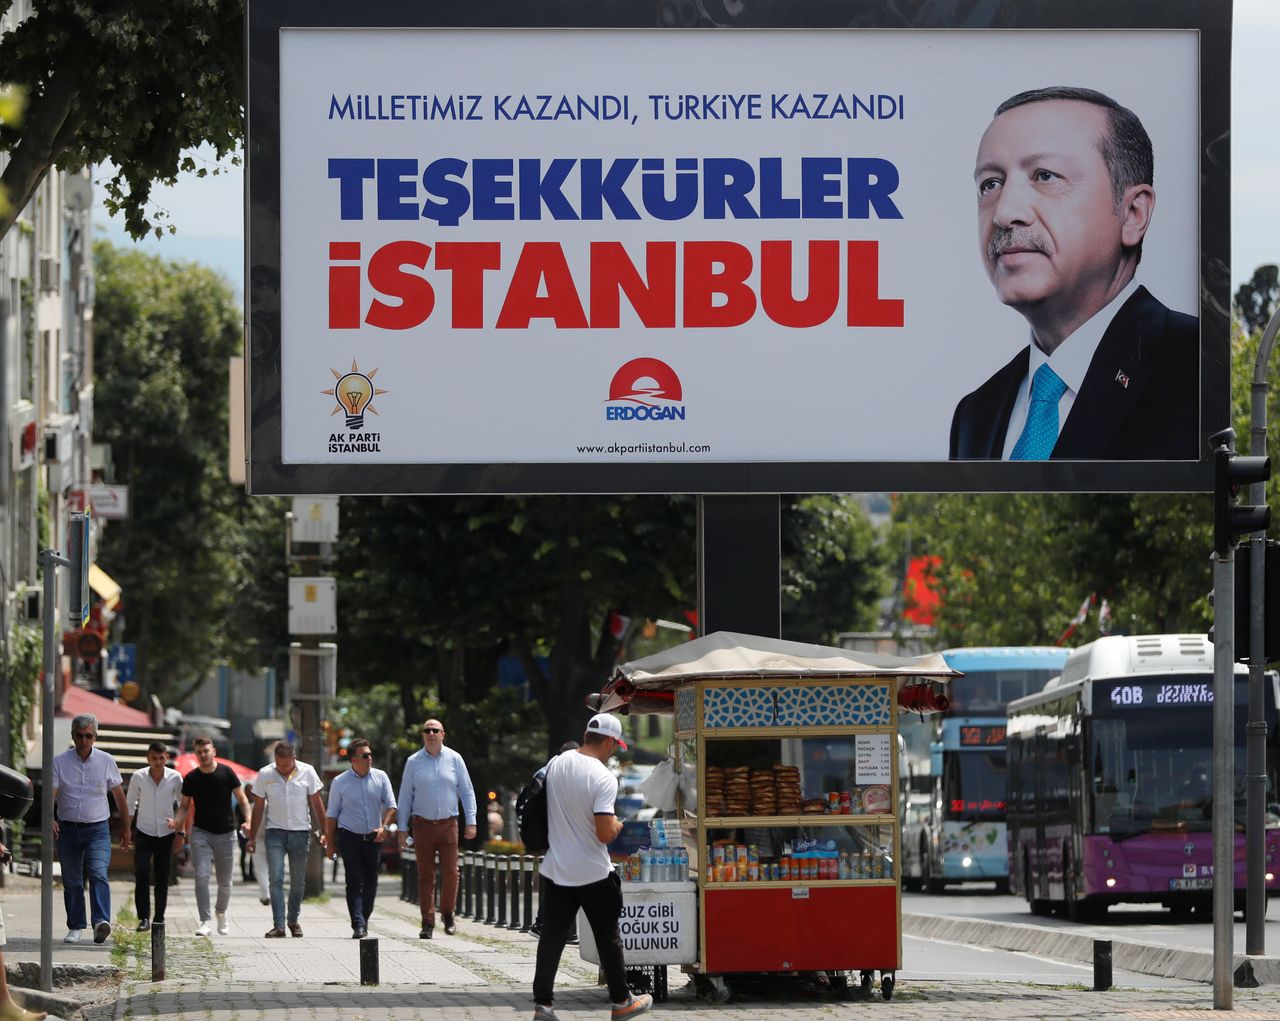 «Οι πολίτες μας νίκησαν, η Τουρκία νίκησε. Ευχαριστώ Κωνσταντινούπουλη» Αφίσα που αναρτήθηκε αμέσως μετά την εκλογική νίκη του Ερντογάν